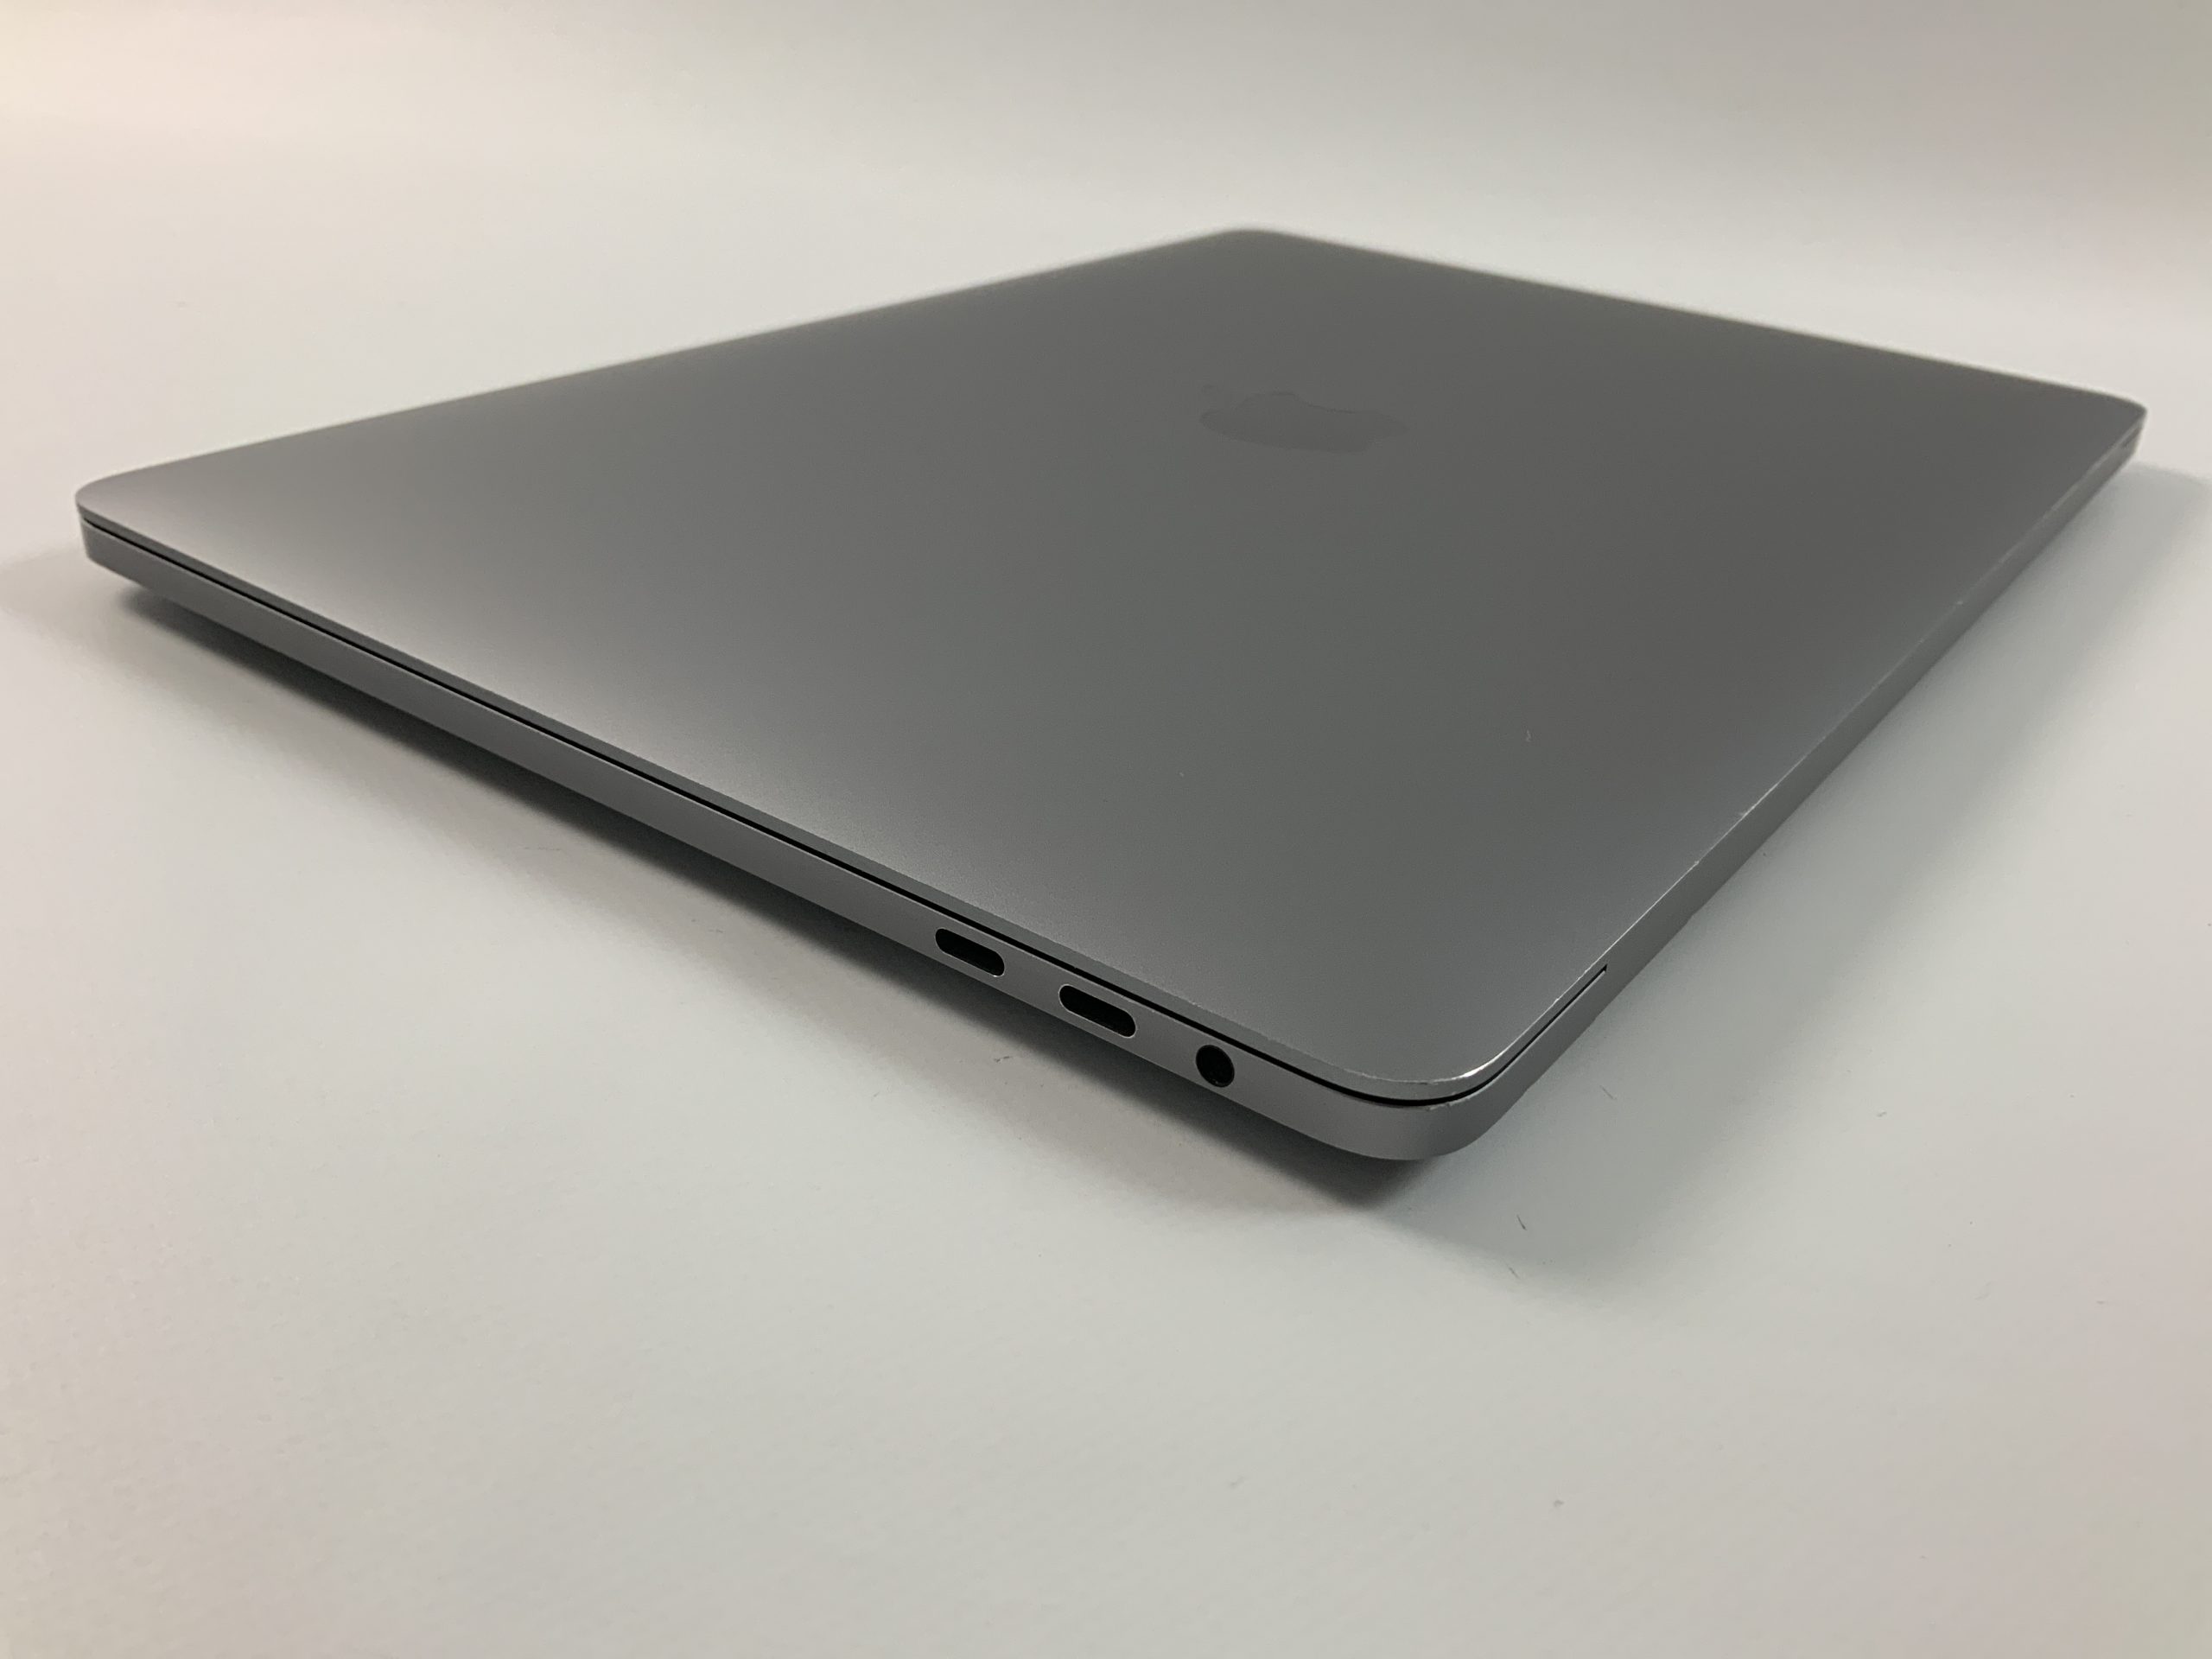 MacBook Pro 13" 4TBT Mid 2020 (Intel Quad-Core i5 2.0 GHz 16 GB RAM 1 TB SSD), Space Gray, Intel Quad-Core i5 2.0 GHz, 16 GB RAM, 1 TB SSD, Bild 3